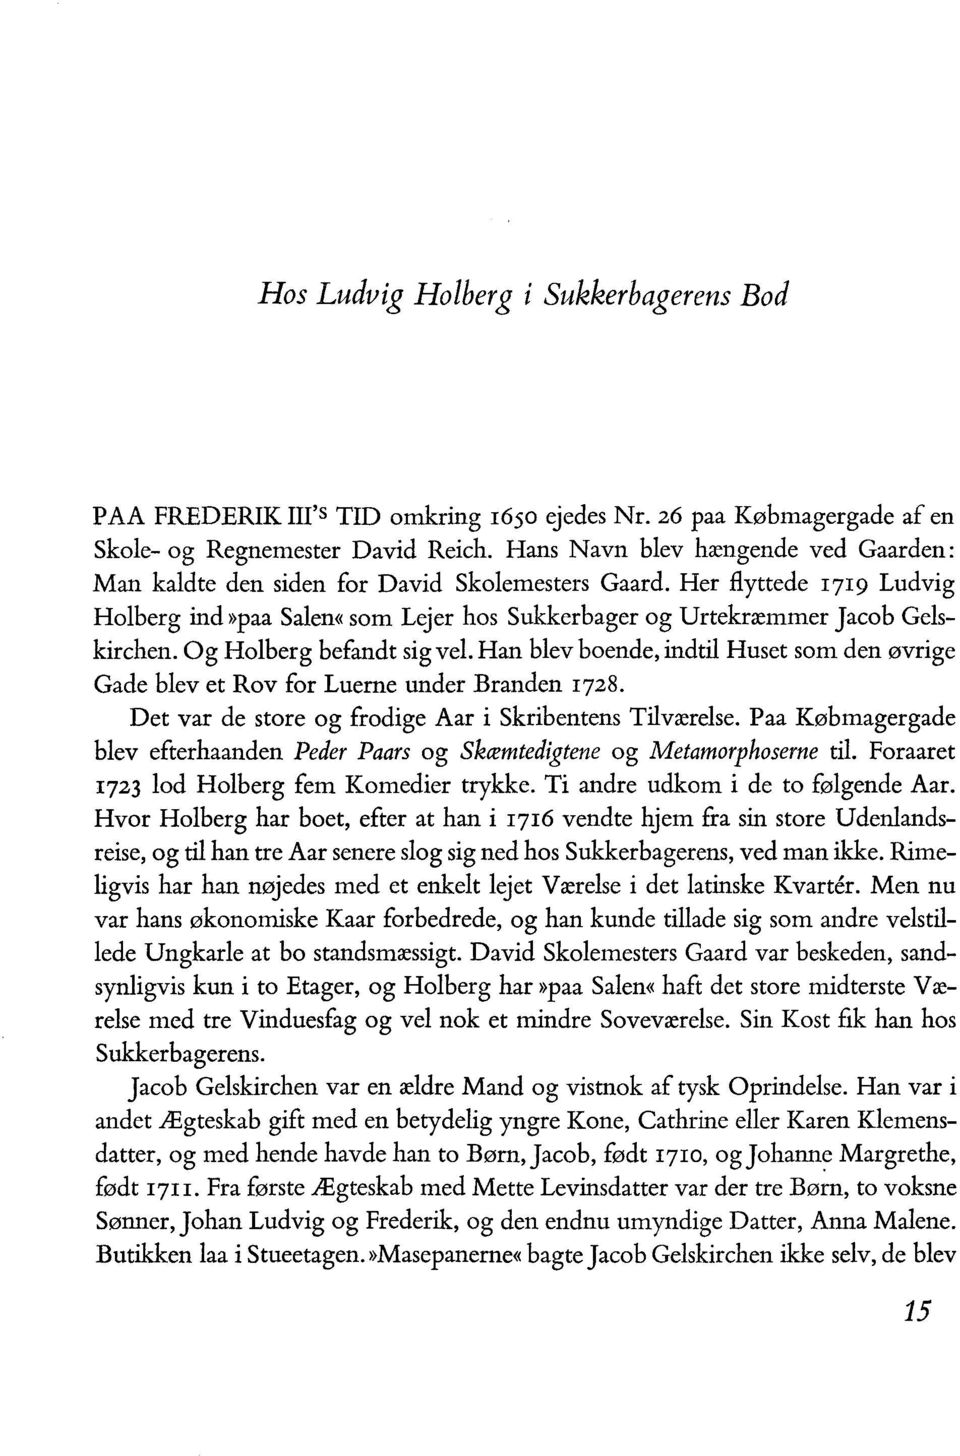 Og Holberg befandt sig vel. Han blev boende, indtil Huset som den øvrige Gade blevet Rov for Luerne under Branden I728. Det var de store og frodige Aar i Skribentens Tilværelse.